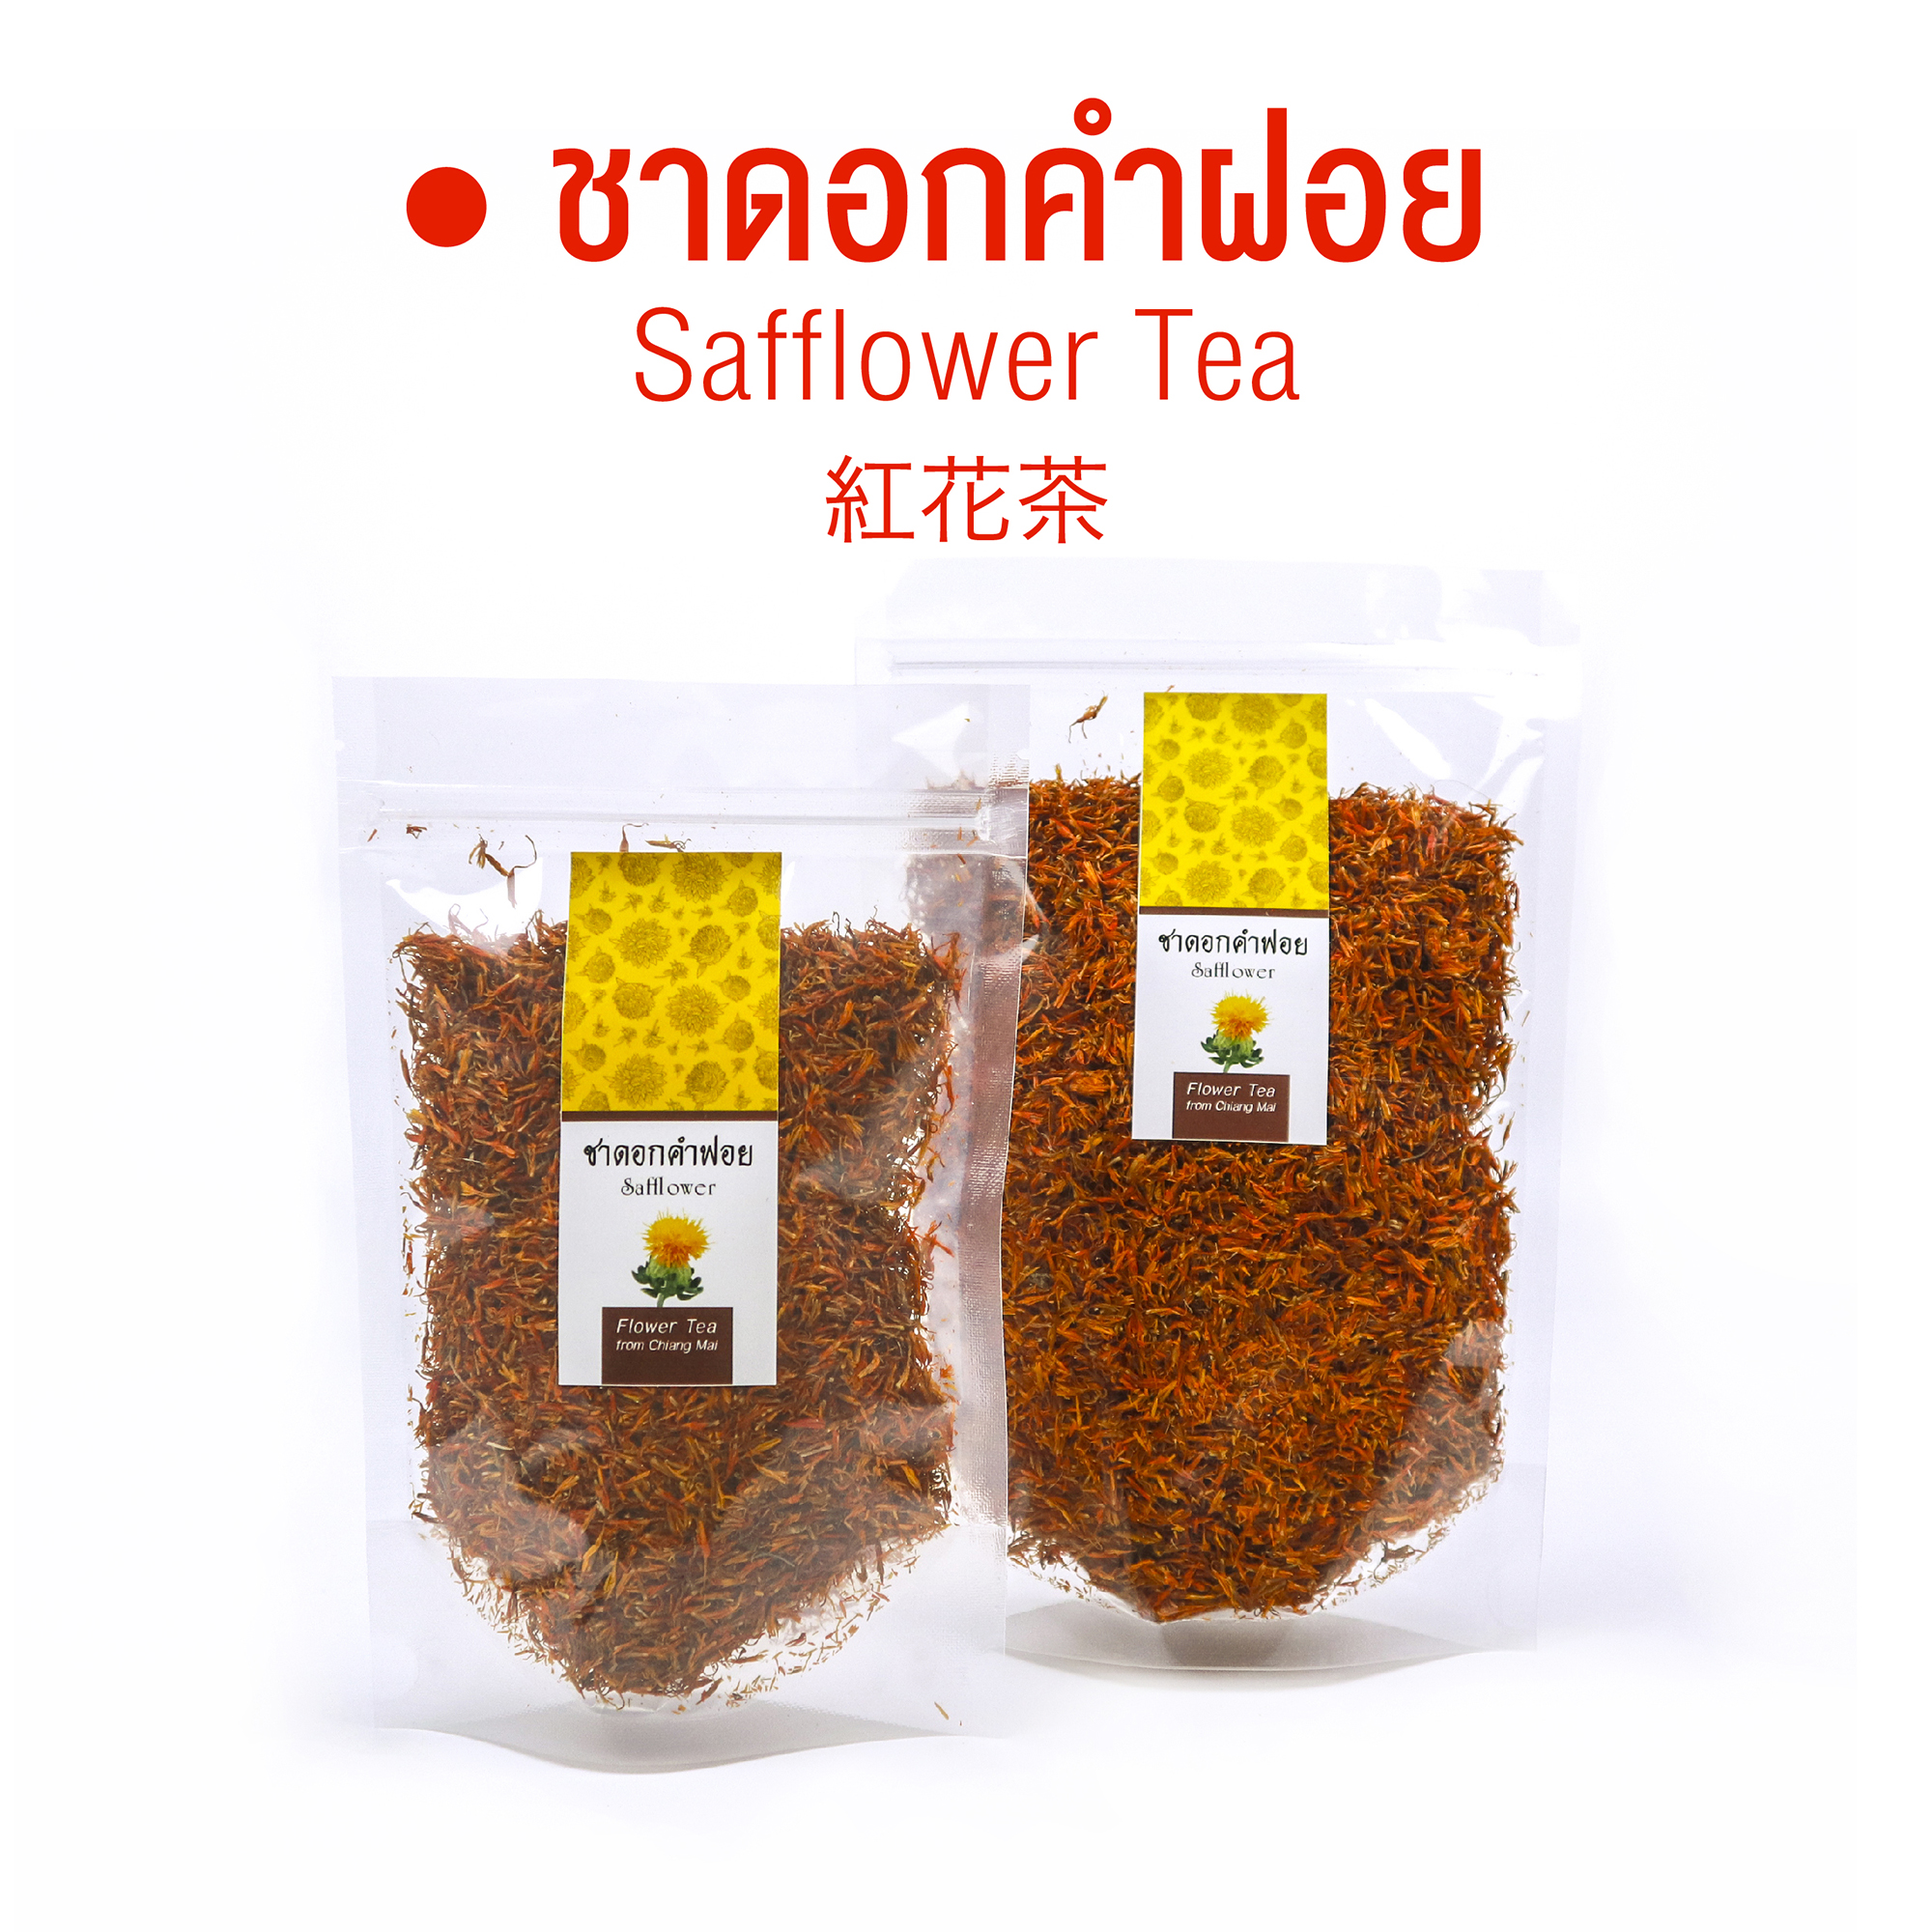 ชาดอกคำฝอย Safflower Tea